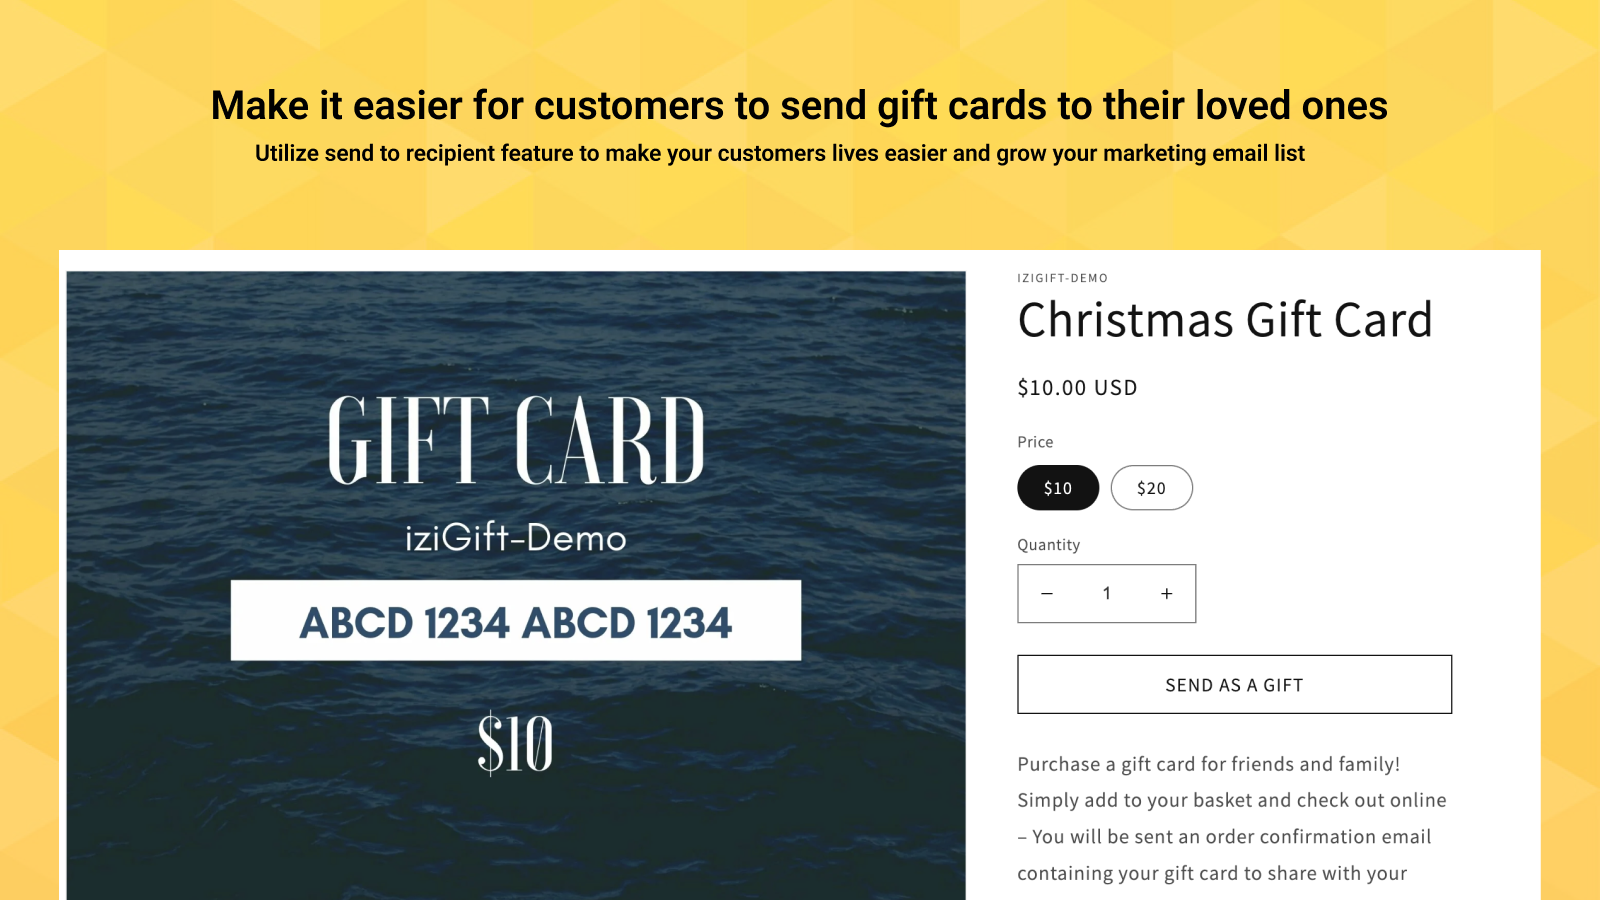 Kunden kan e-posta presentkort direkt (Klaviyo-integration)